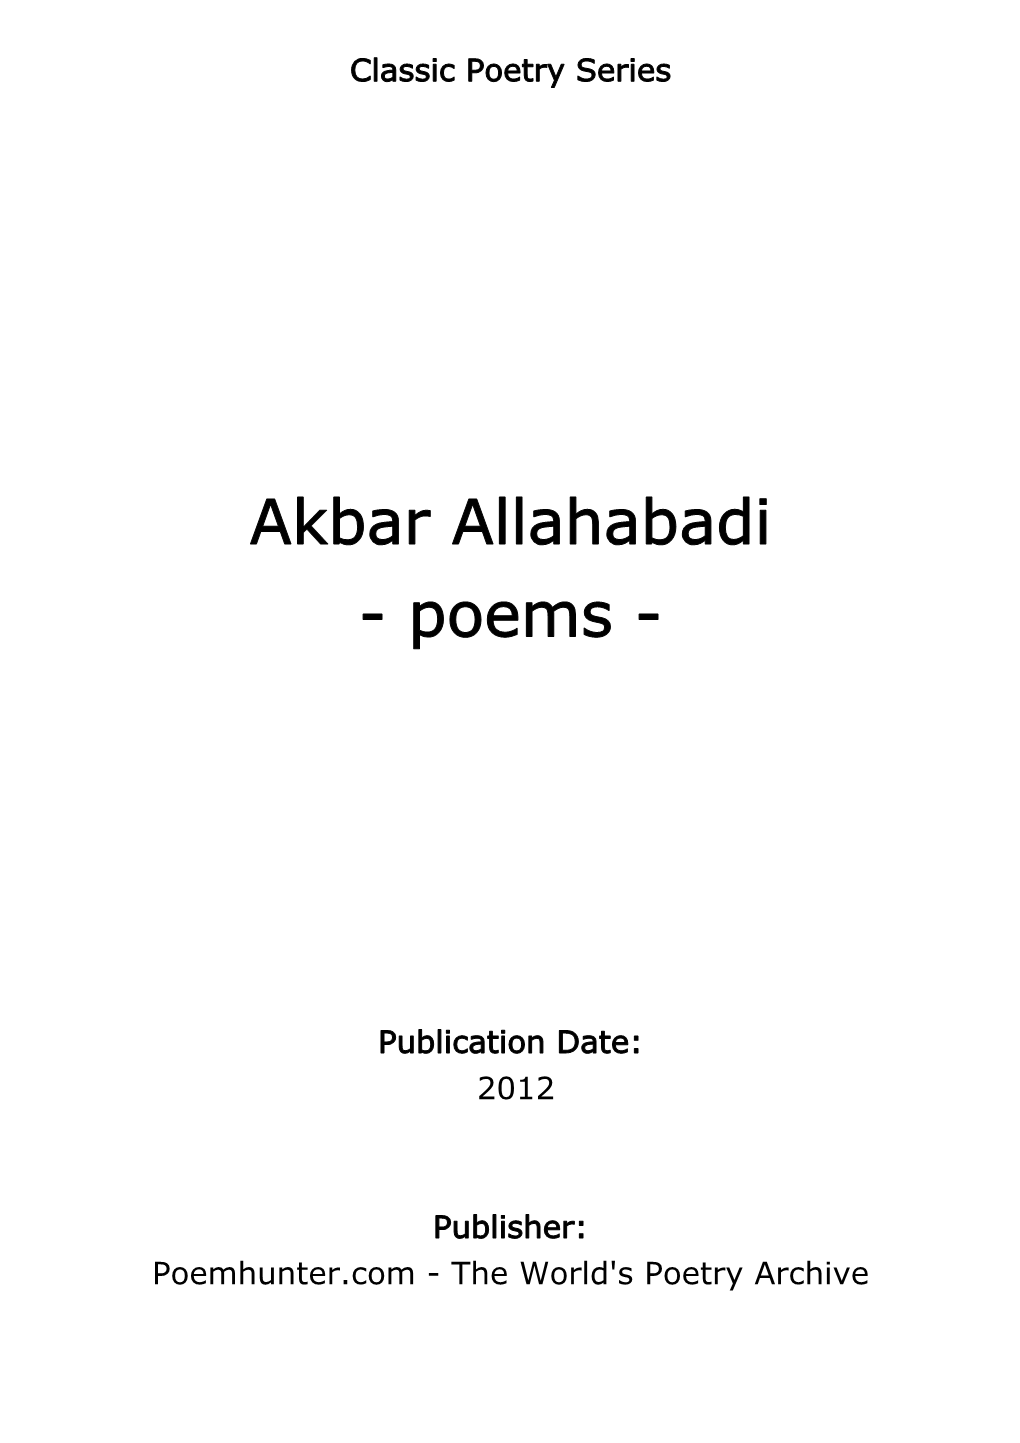 Akbar Allahabadi - Poems